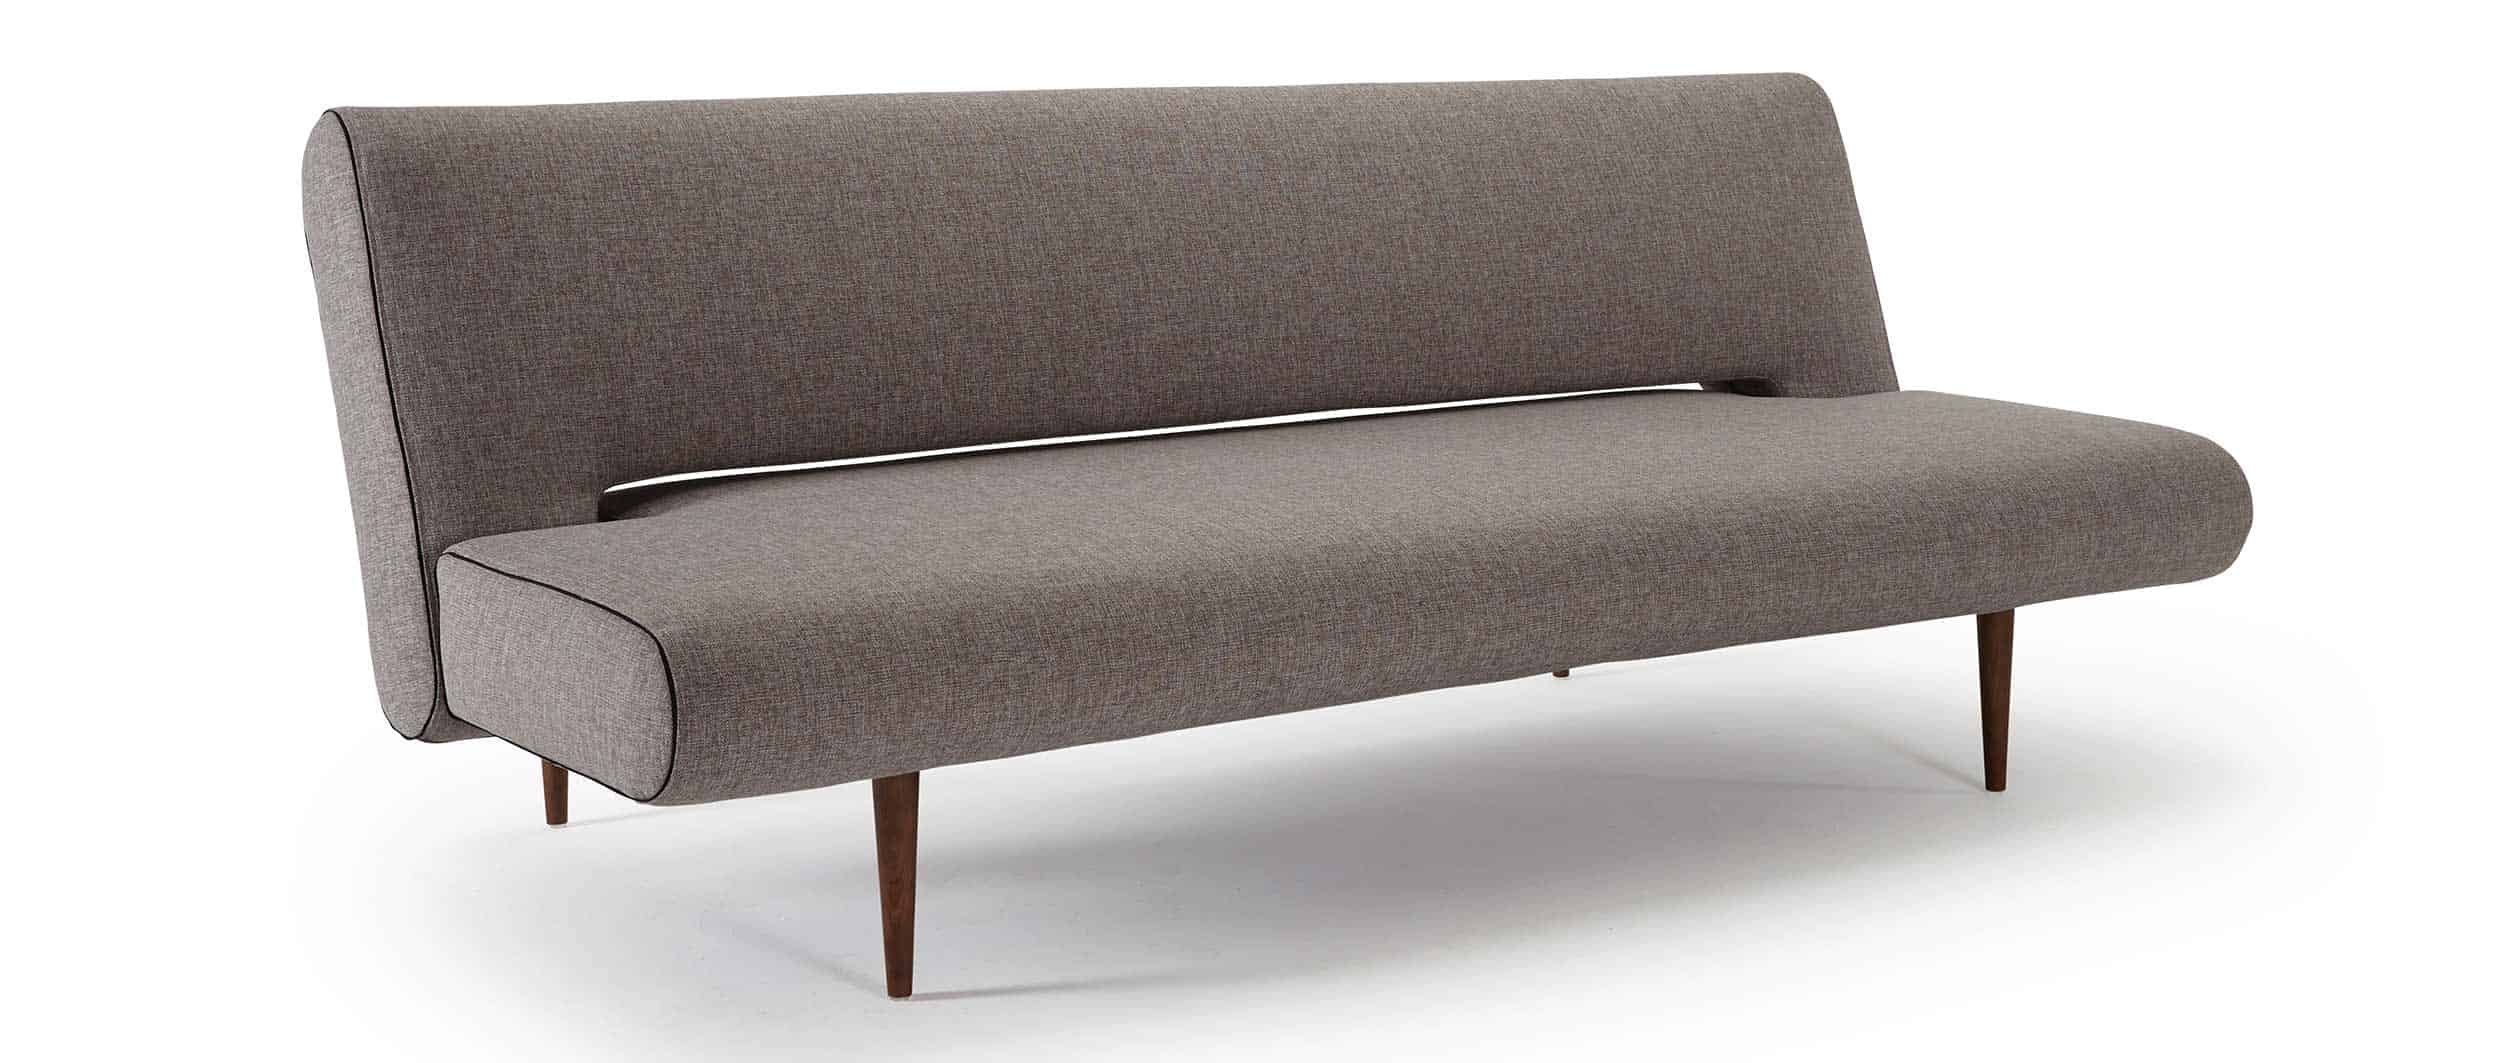 grau-braunes Designer Schlafsofa UNFURL von Innovation mit dunklen Holzfüßen, Gästebett mit verstellbarer Rückenlehne - 120x200 cm